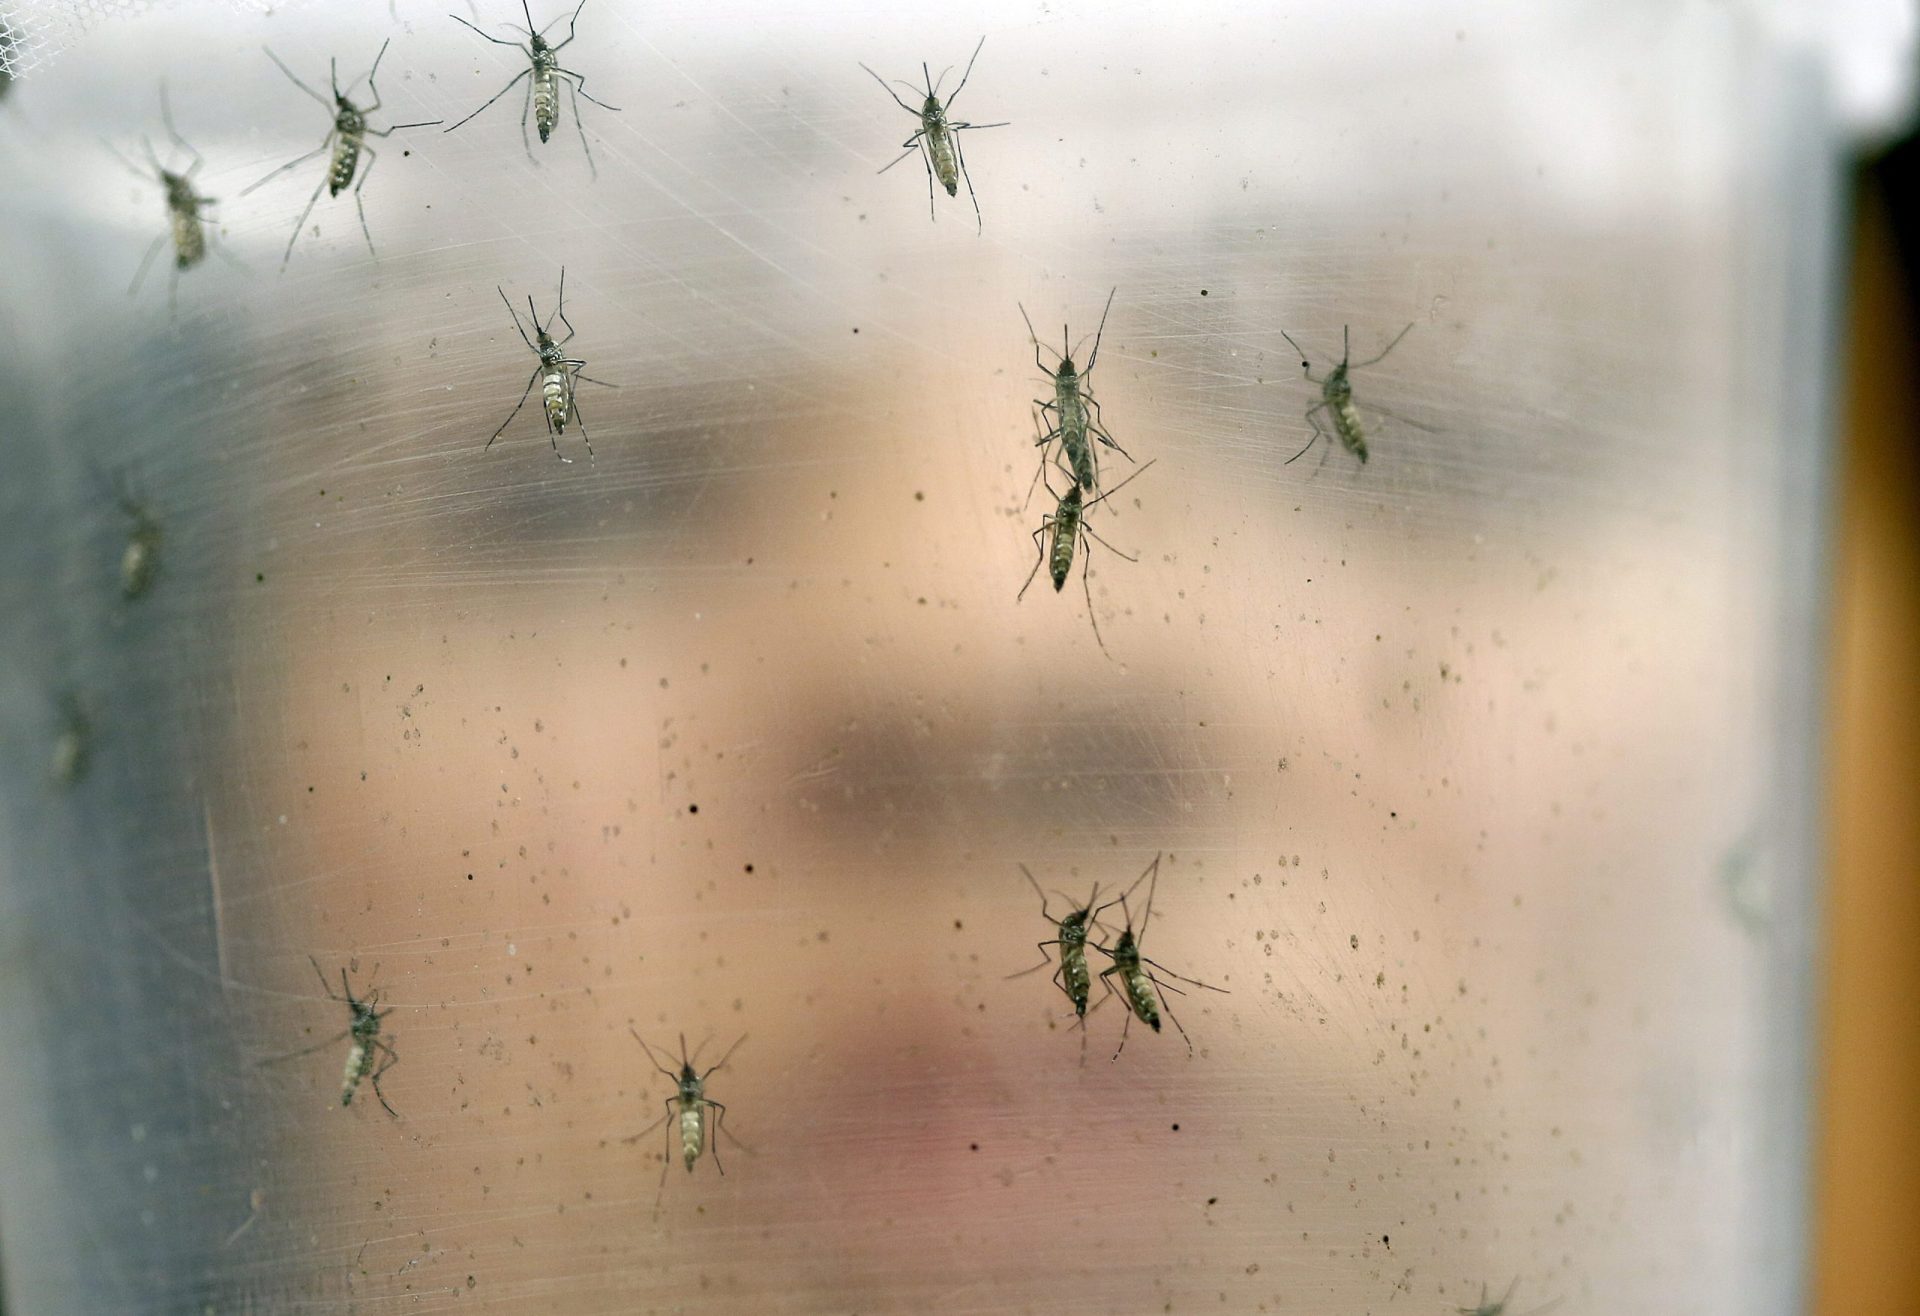 EUA põem Cabo Verde na lista de países de risco do vírus zika